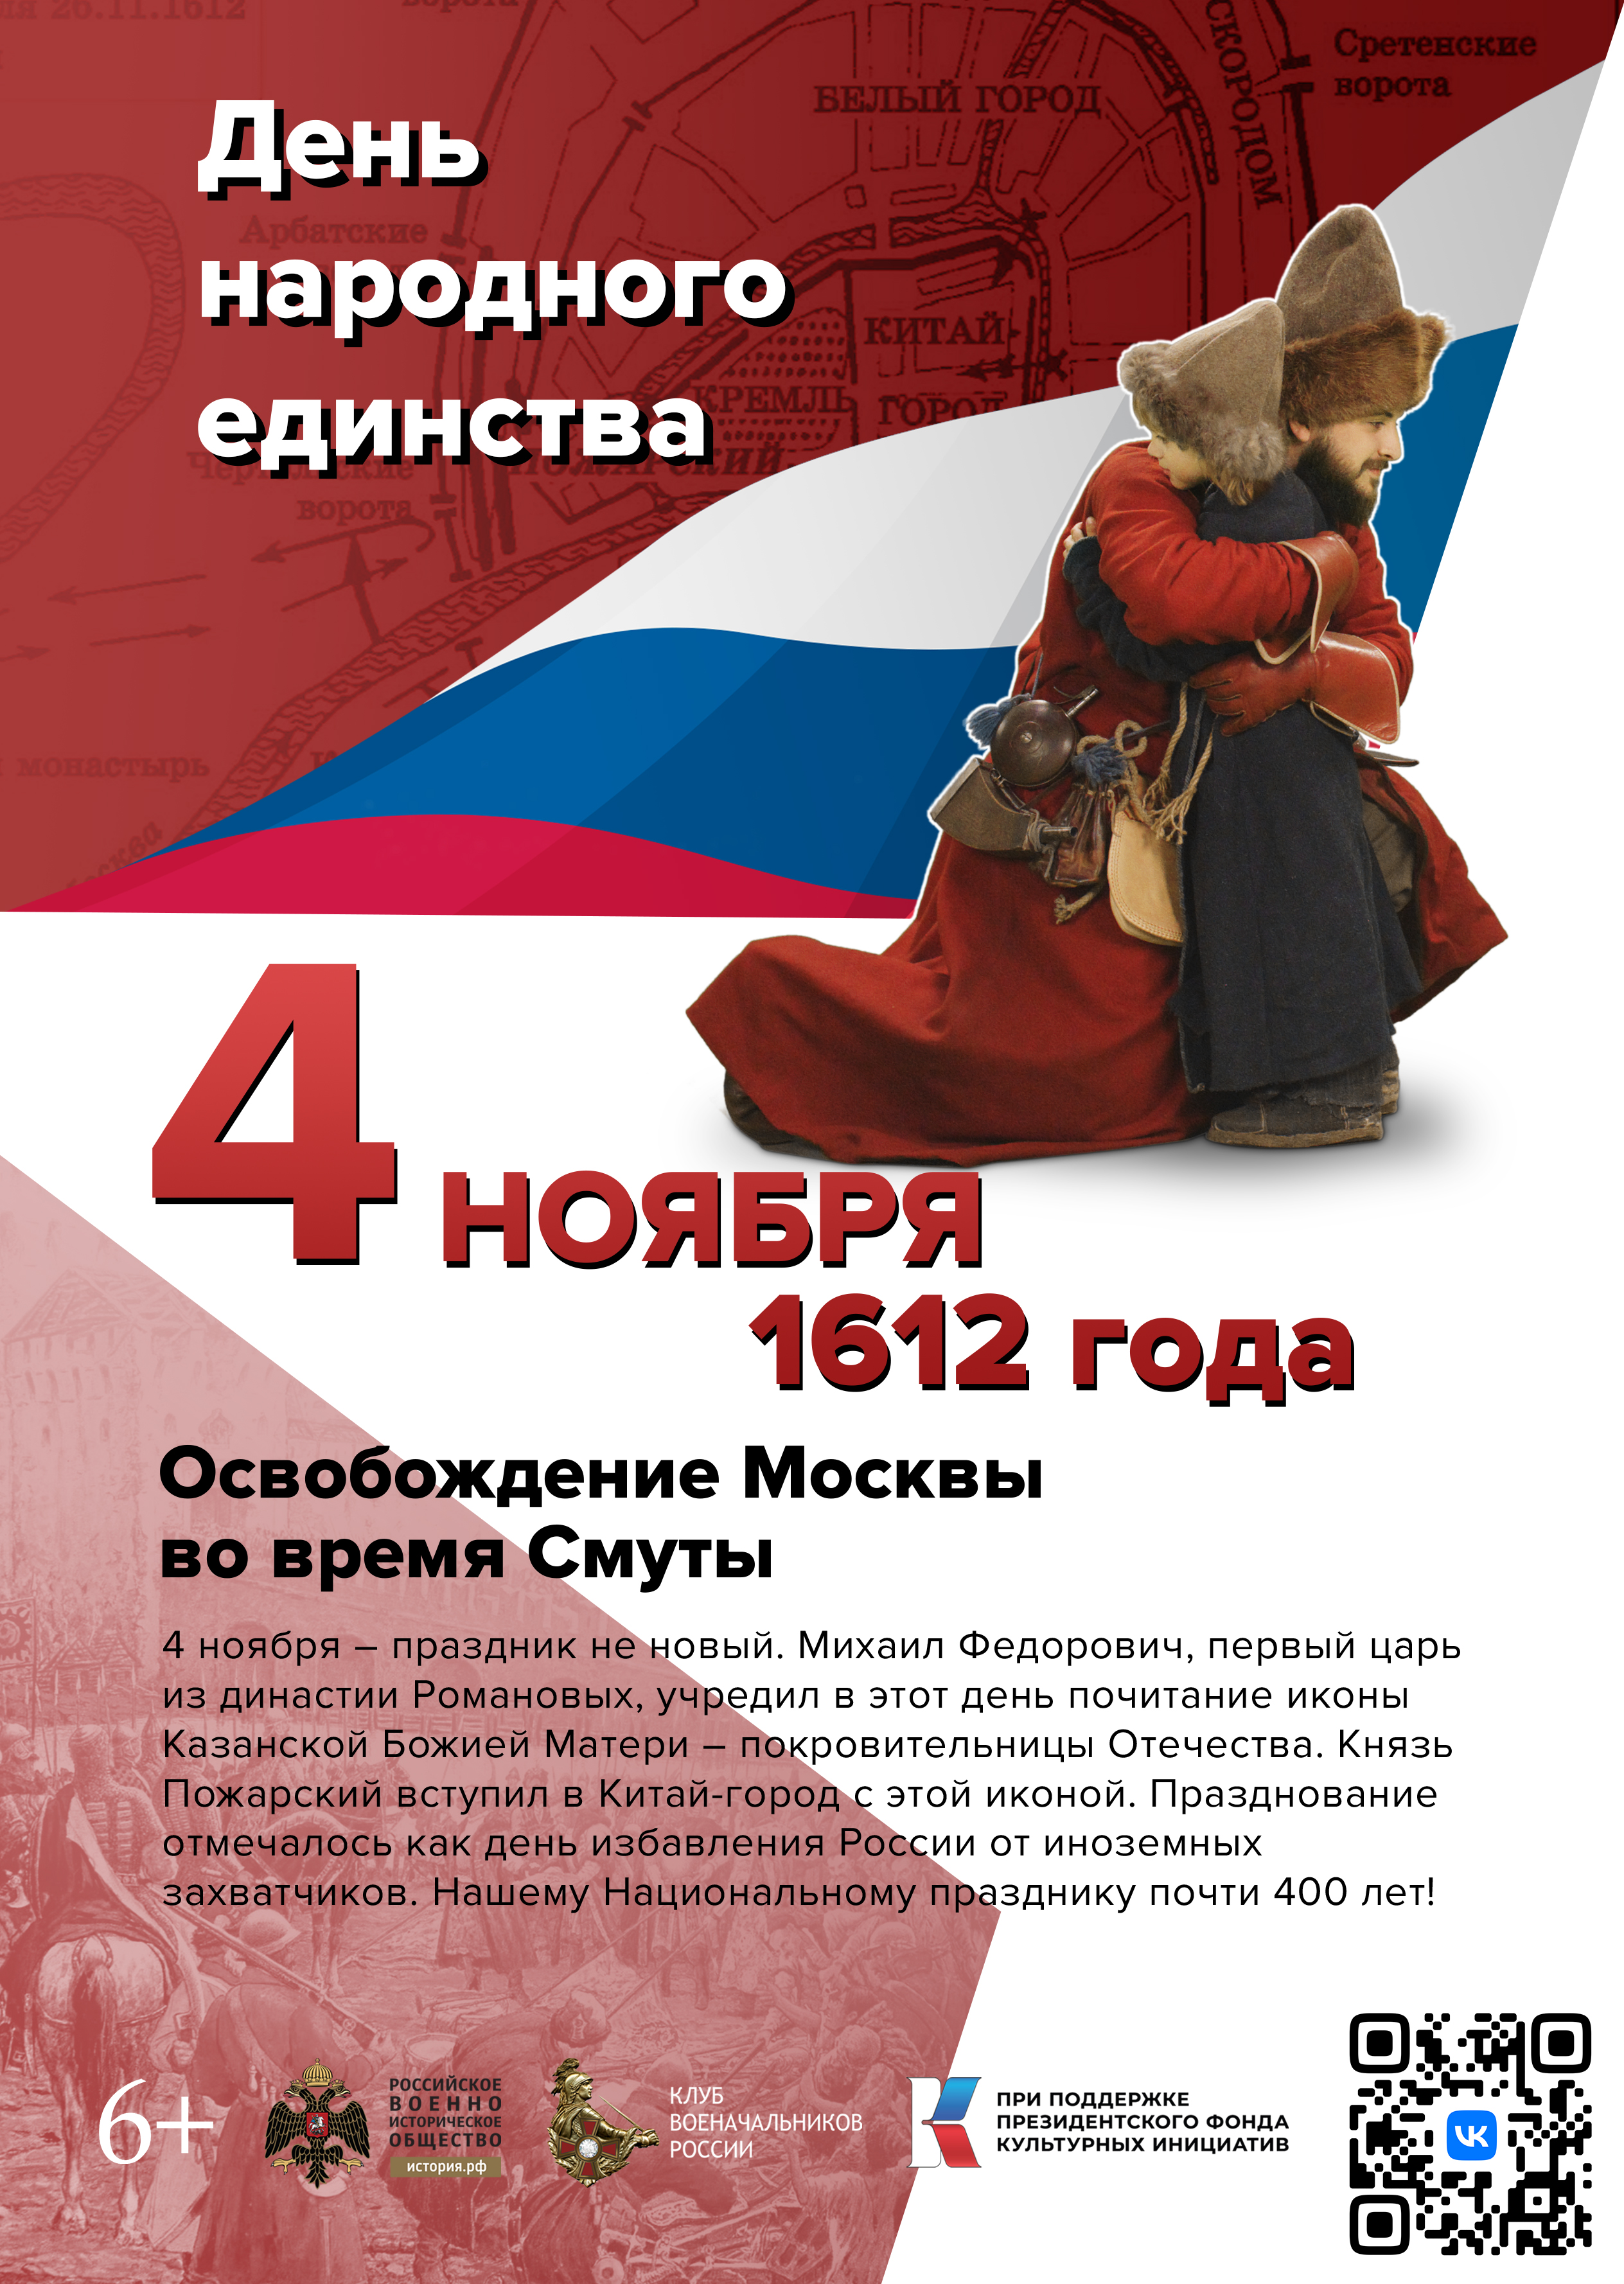 Памятные даты военной истории России.